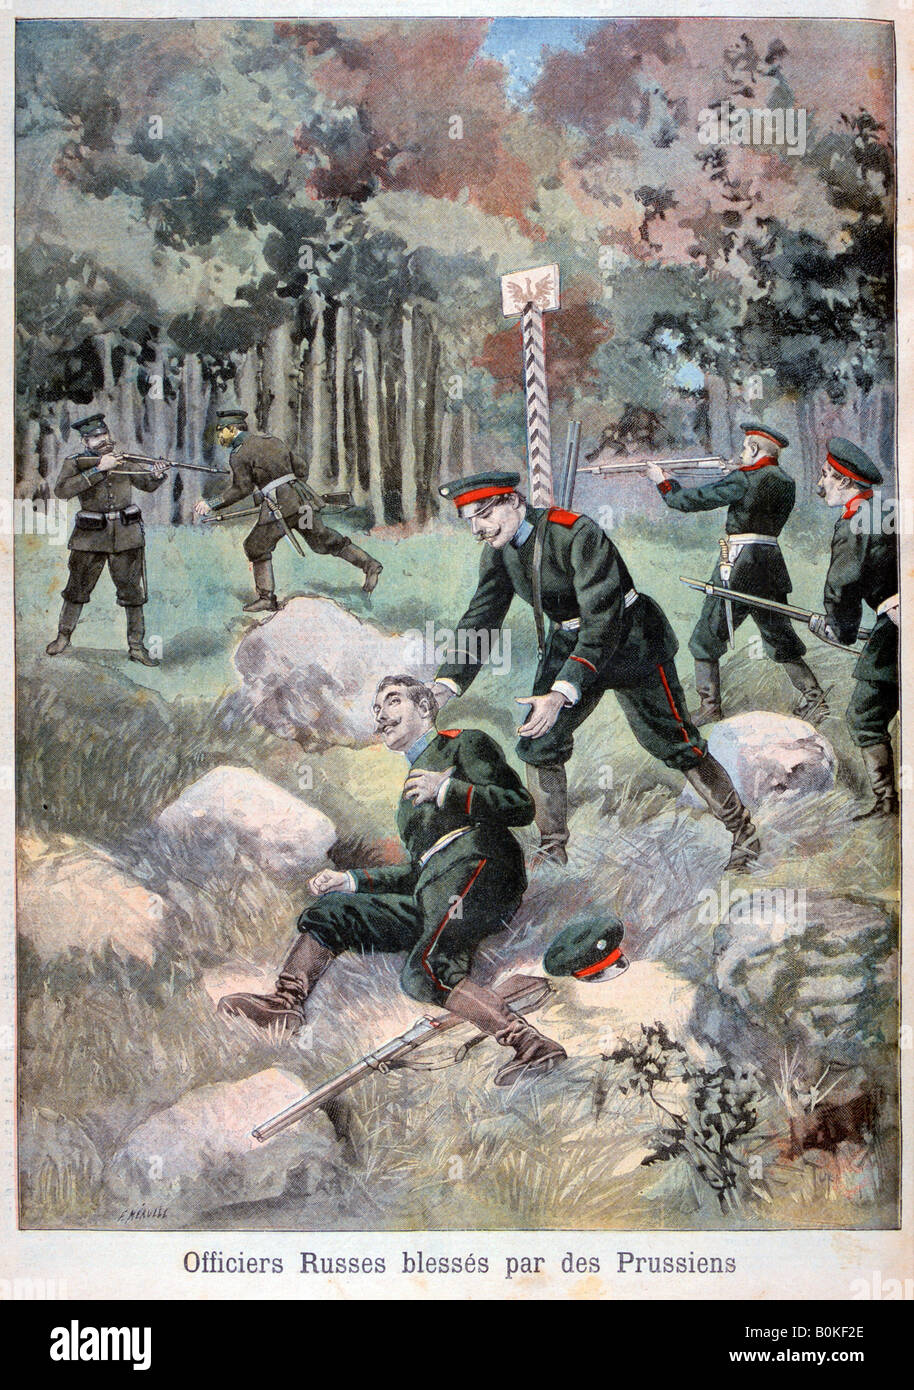 Oficial ruso heridos por los prusianos, frontera con Rusia, 1898. Artista: F Meaulle Foto de stock